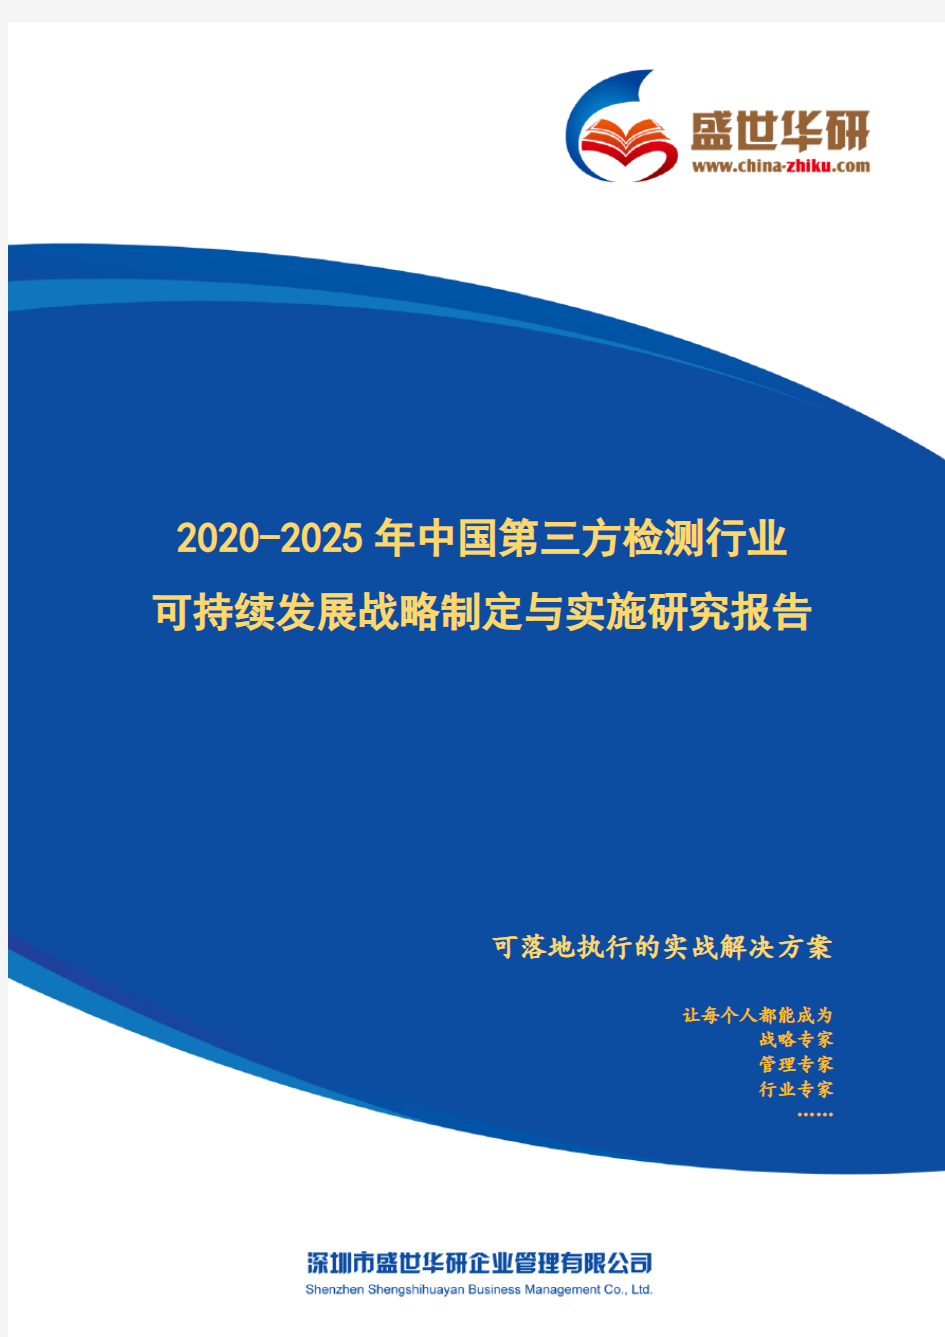 【完整版】2020-2025年中国第三方检测行业可持续发展战略制定与实施研究报告